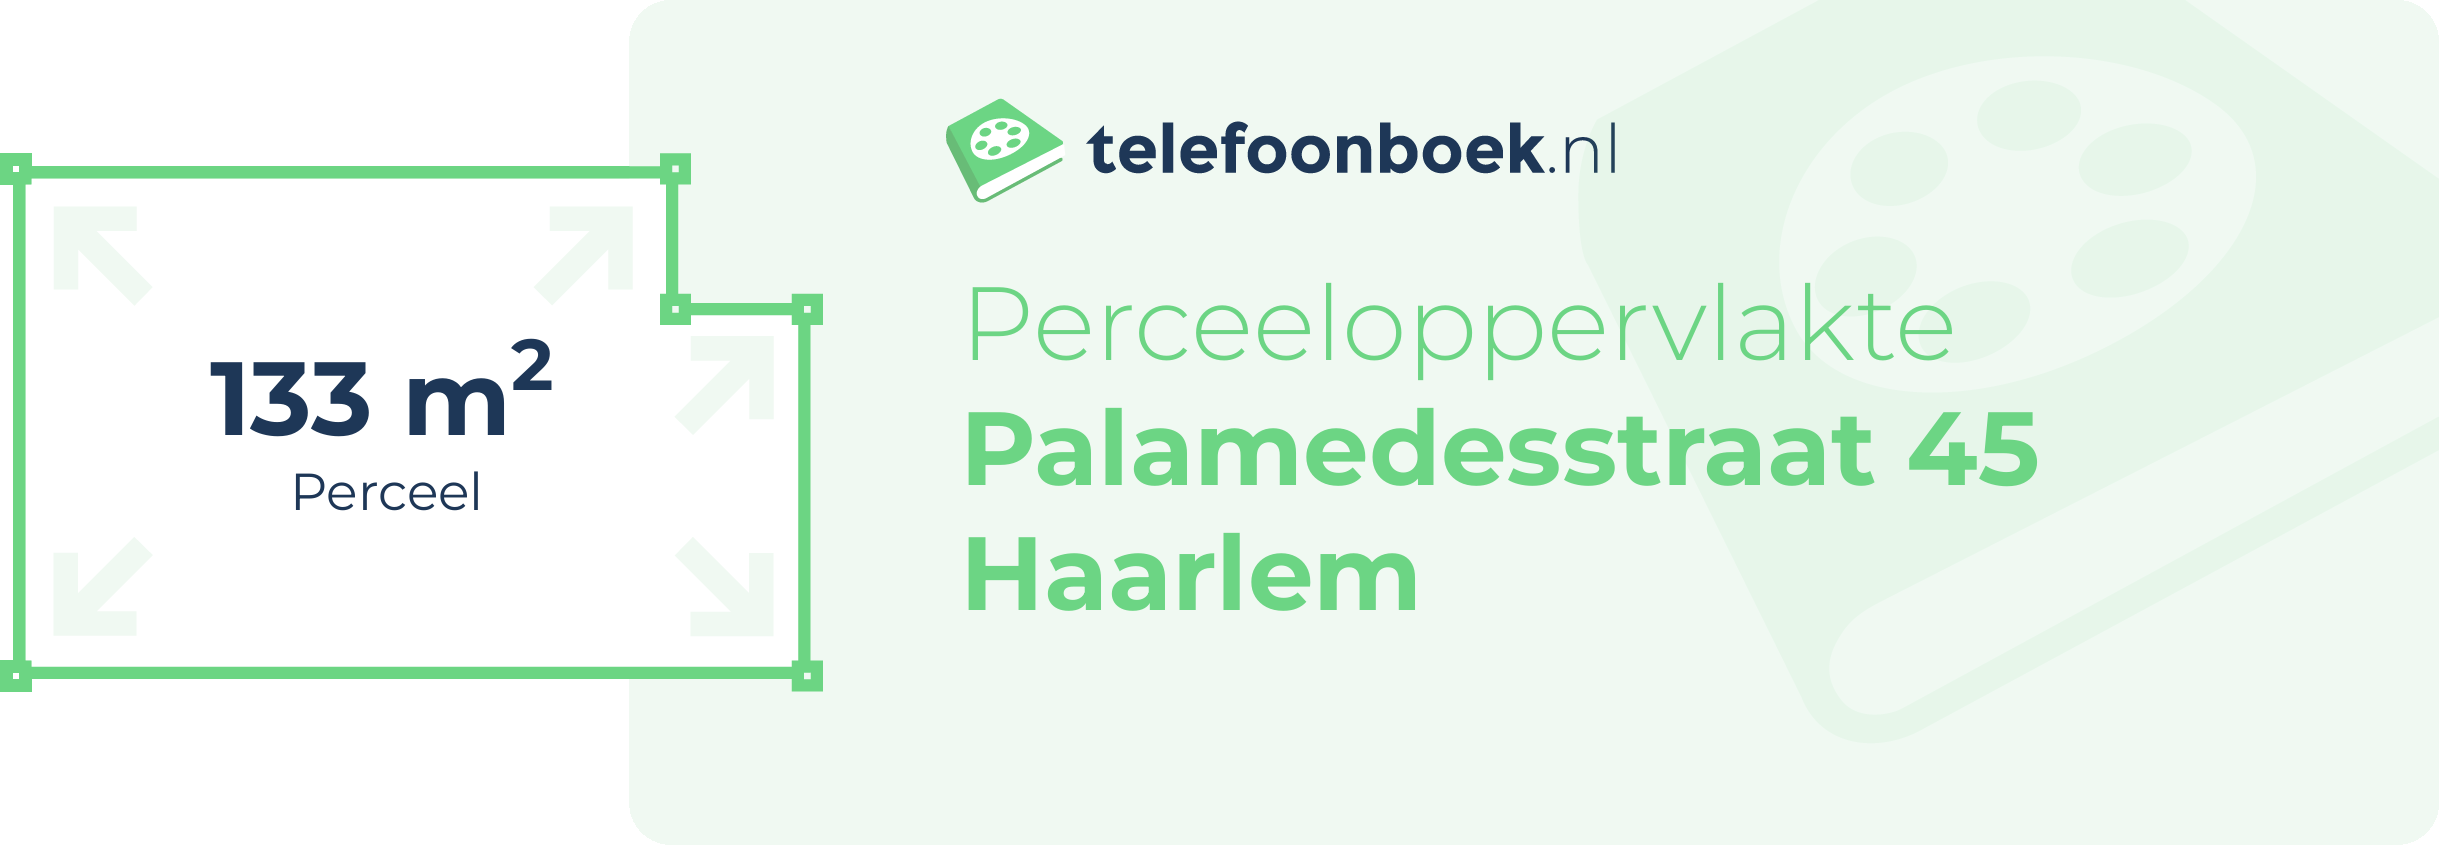 Perceeloppervlakte Palamedesstraat 45 Haarlem